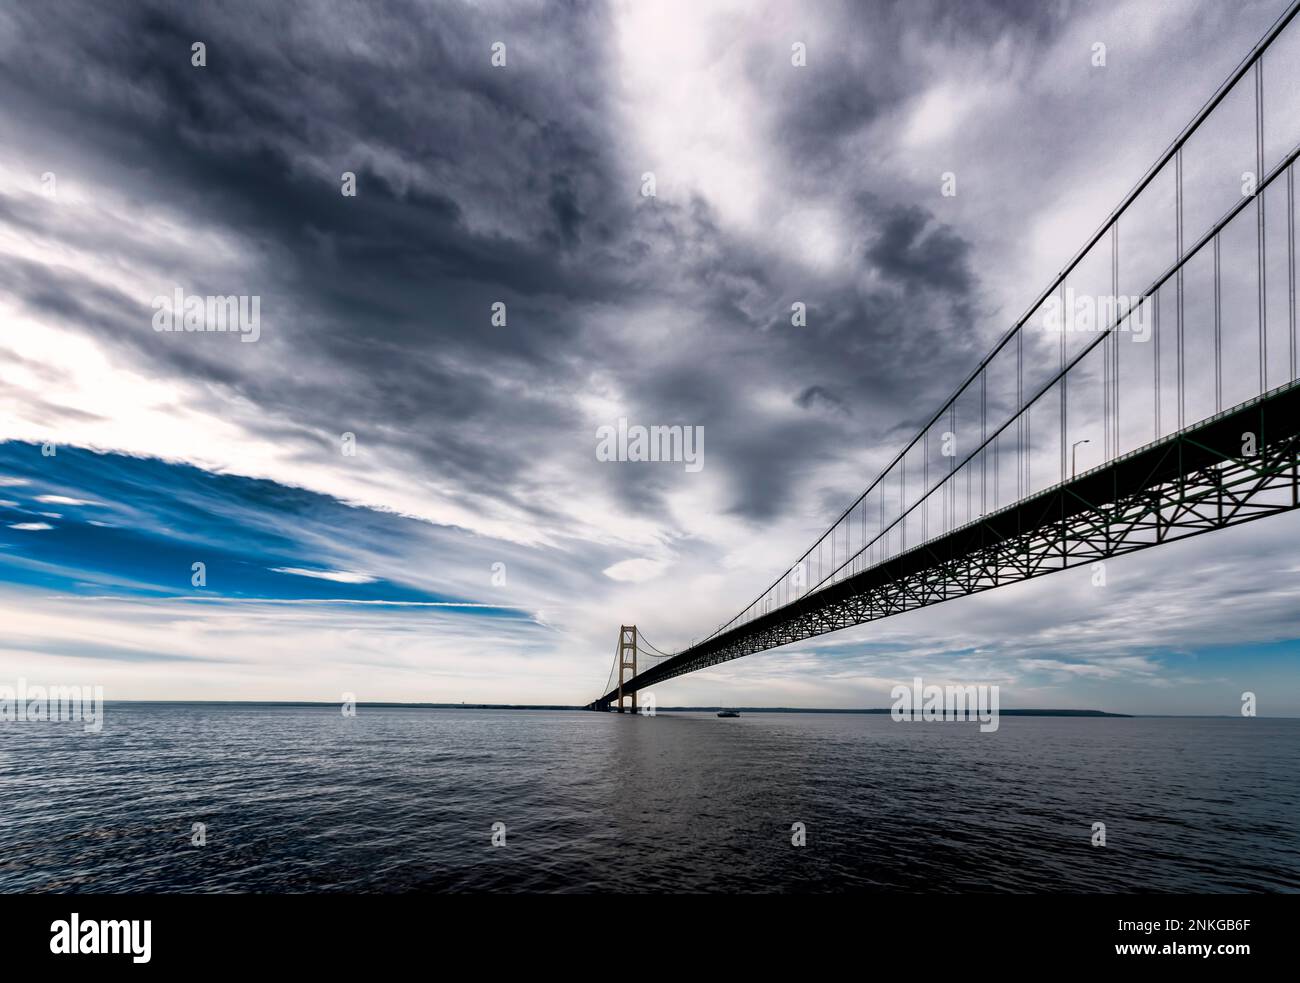 Mackinac Bridge che attraversa lo stretto di Mackinac che collega la penisola superiore e inferiore dello stato americano del Michigan, USA Foto Stock